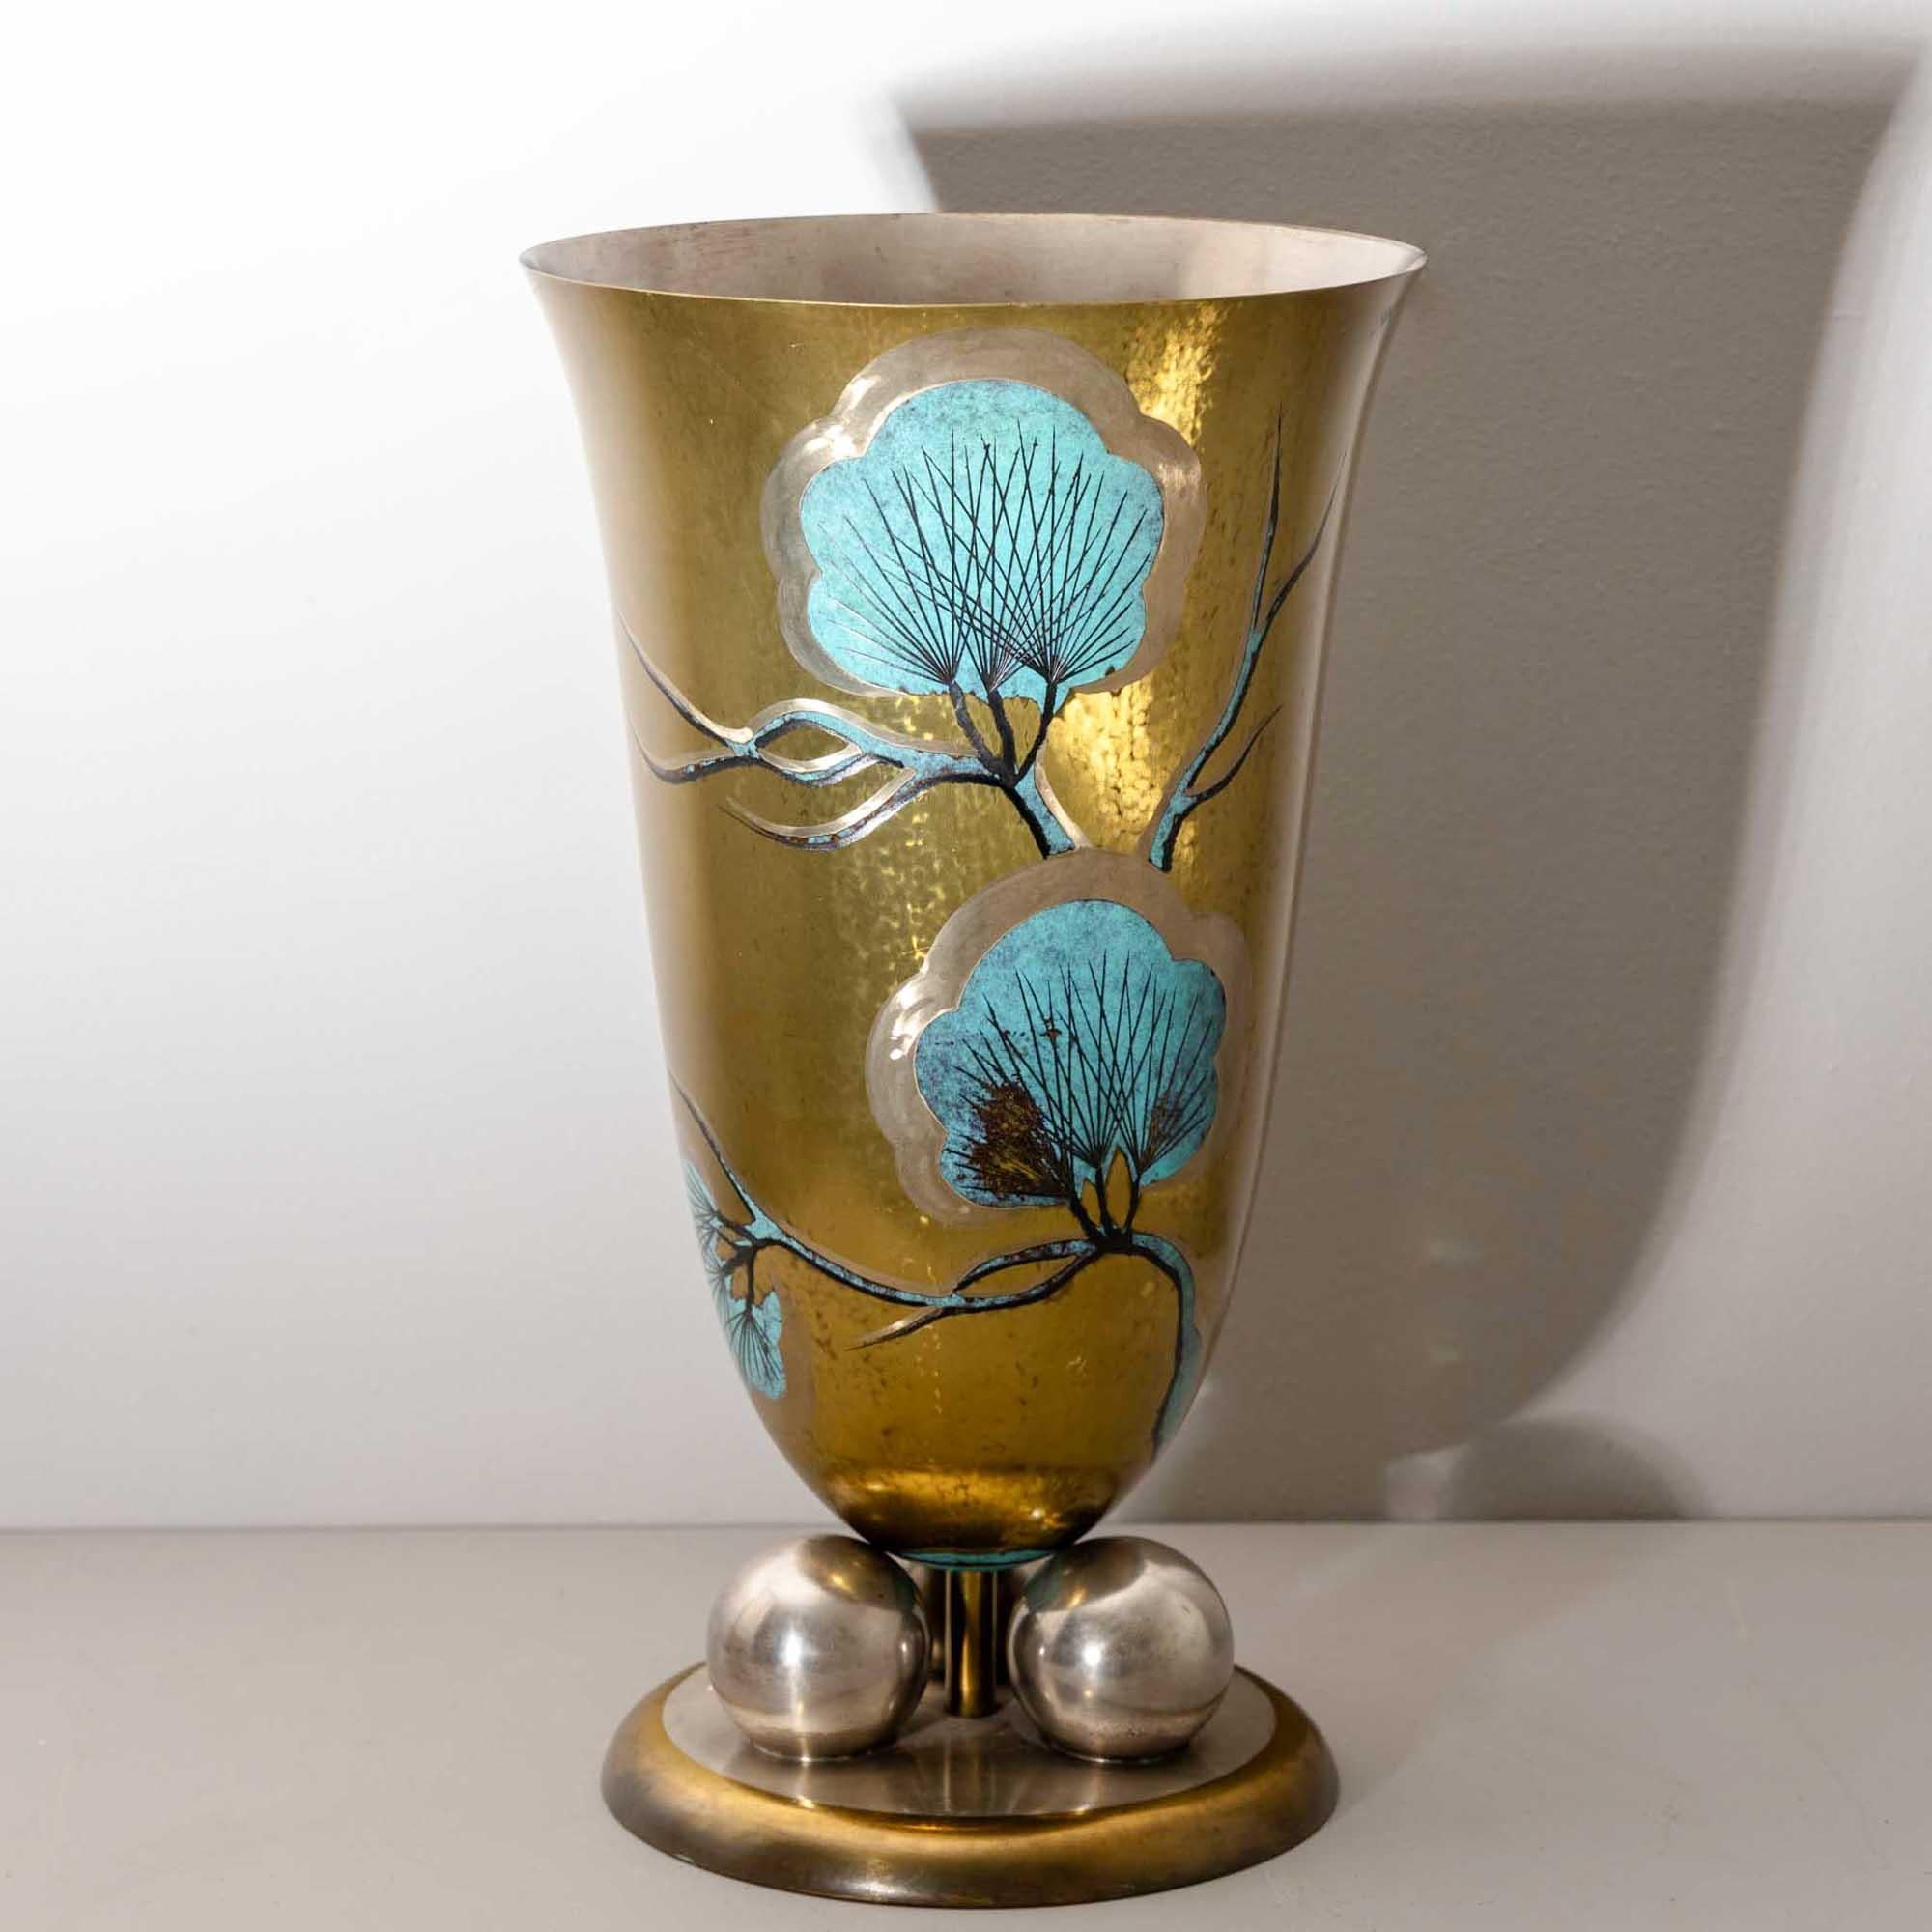 Art Deco Large WMF Vase with Pine Branch Décor, 1920s/30s